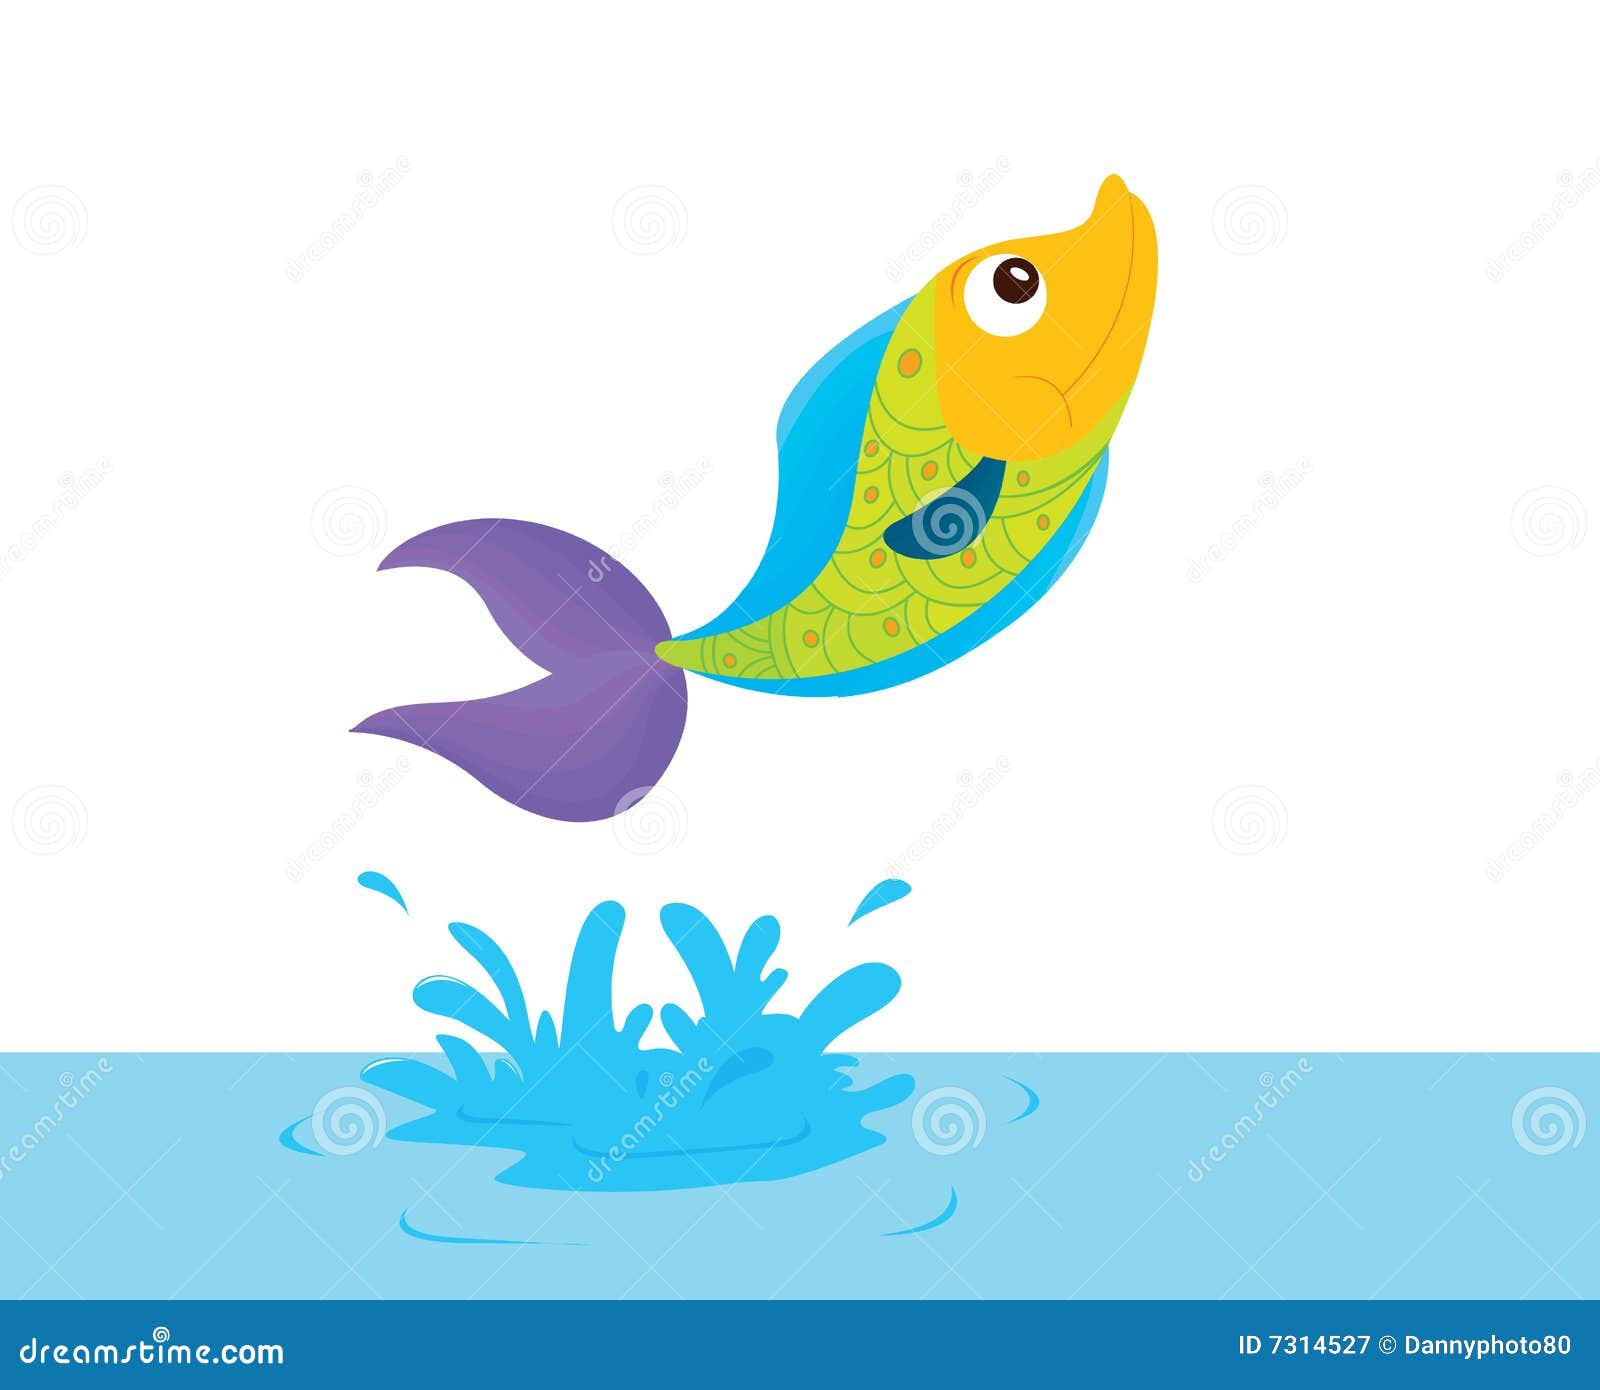 clip art jumping fish - photo #16